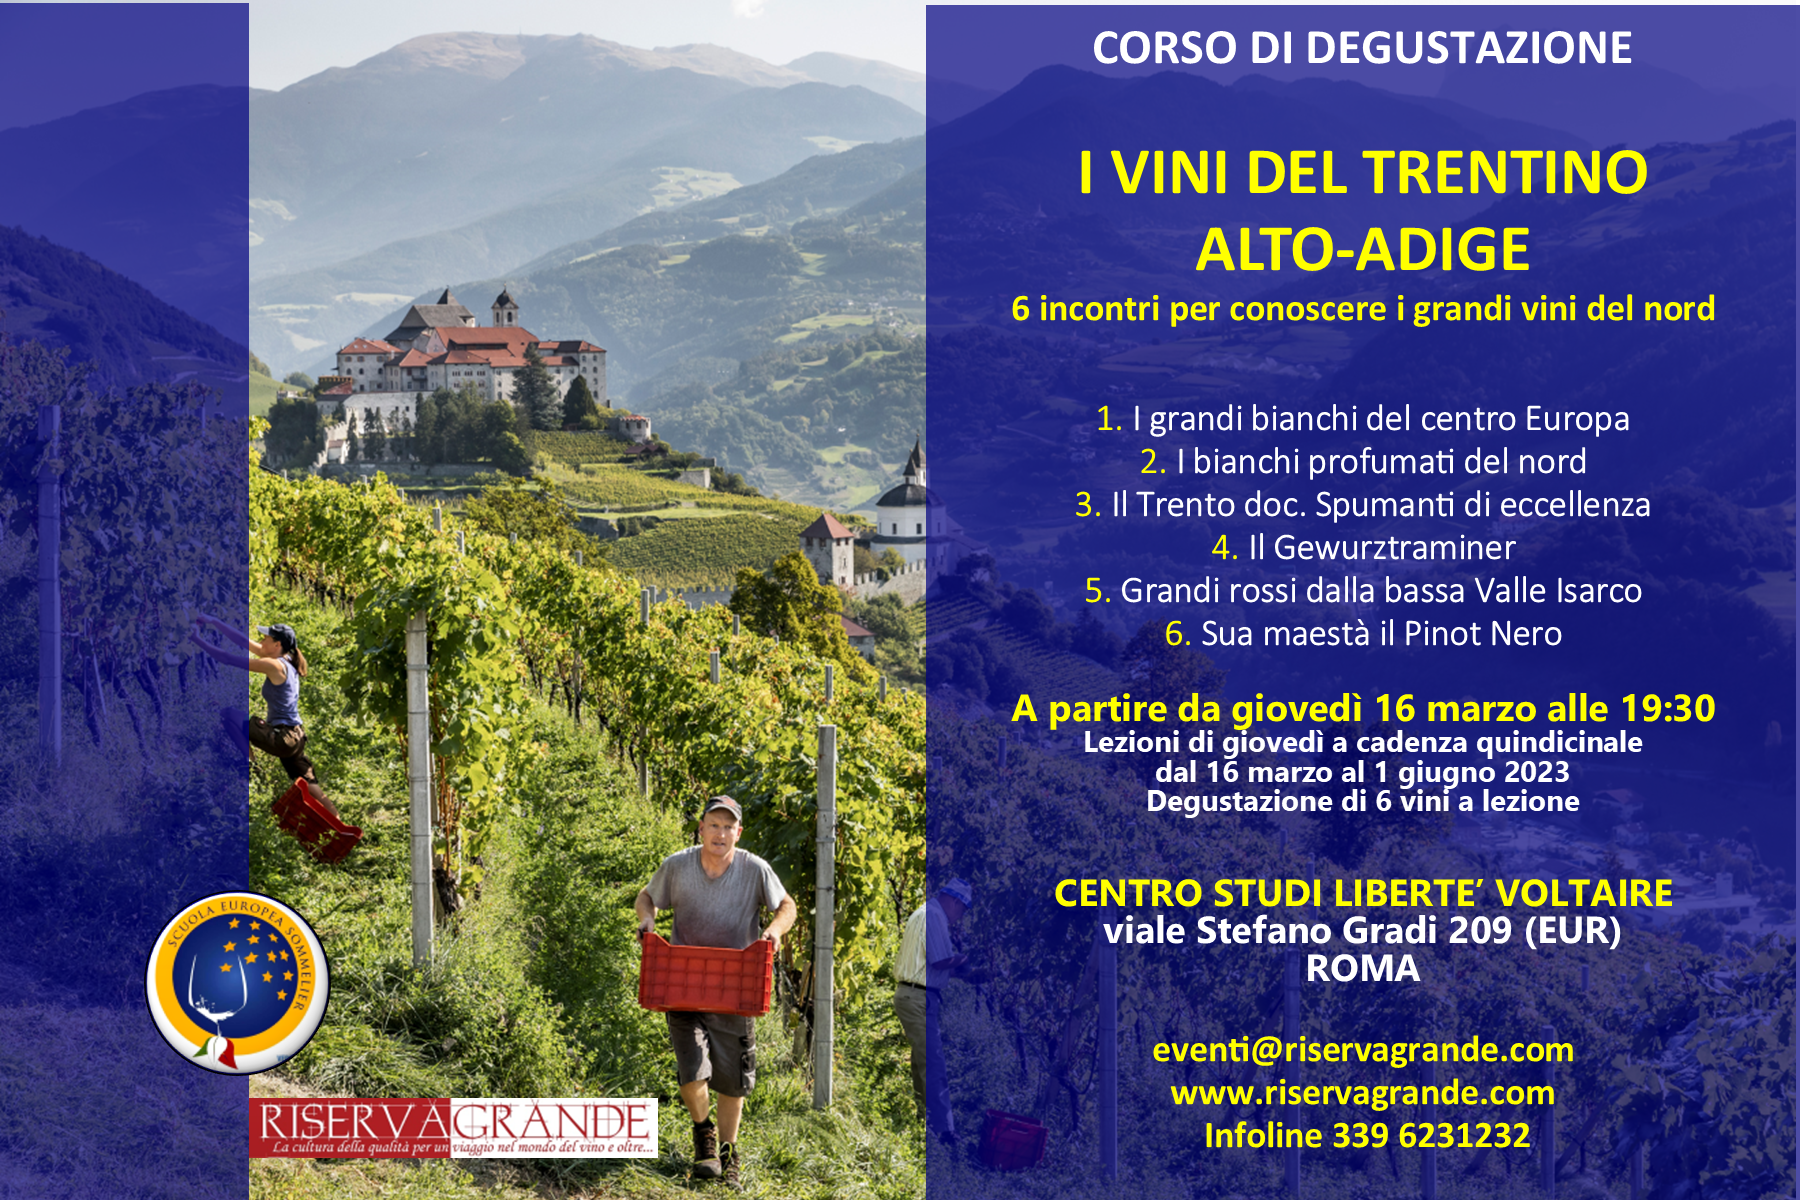 Corso sui grandi vini del Trentino Alto Adige di 6 lezioni a partire da giovedì 16 marzo, foto da comunicato stampa, articolo: Rome Wine Expo 2023